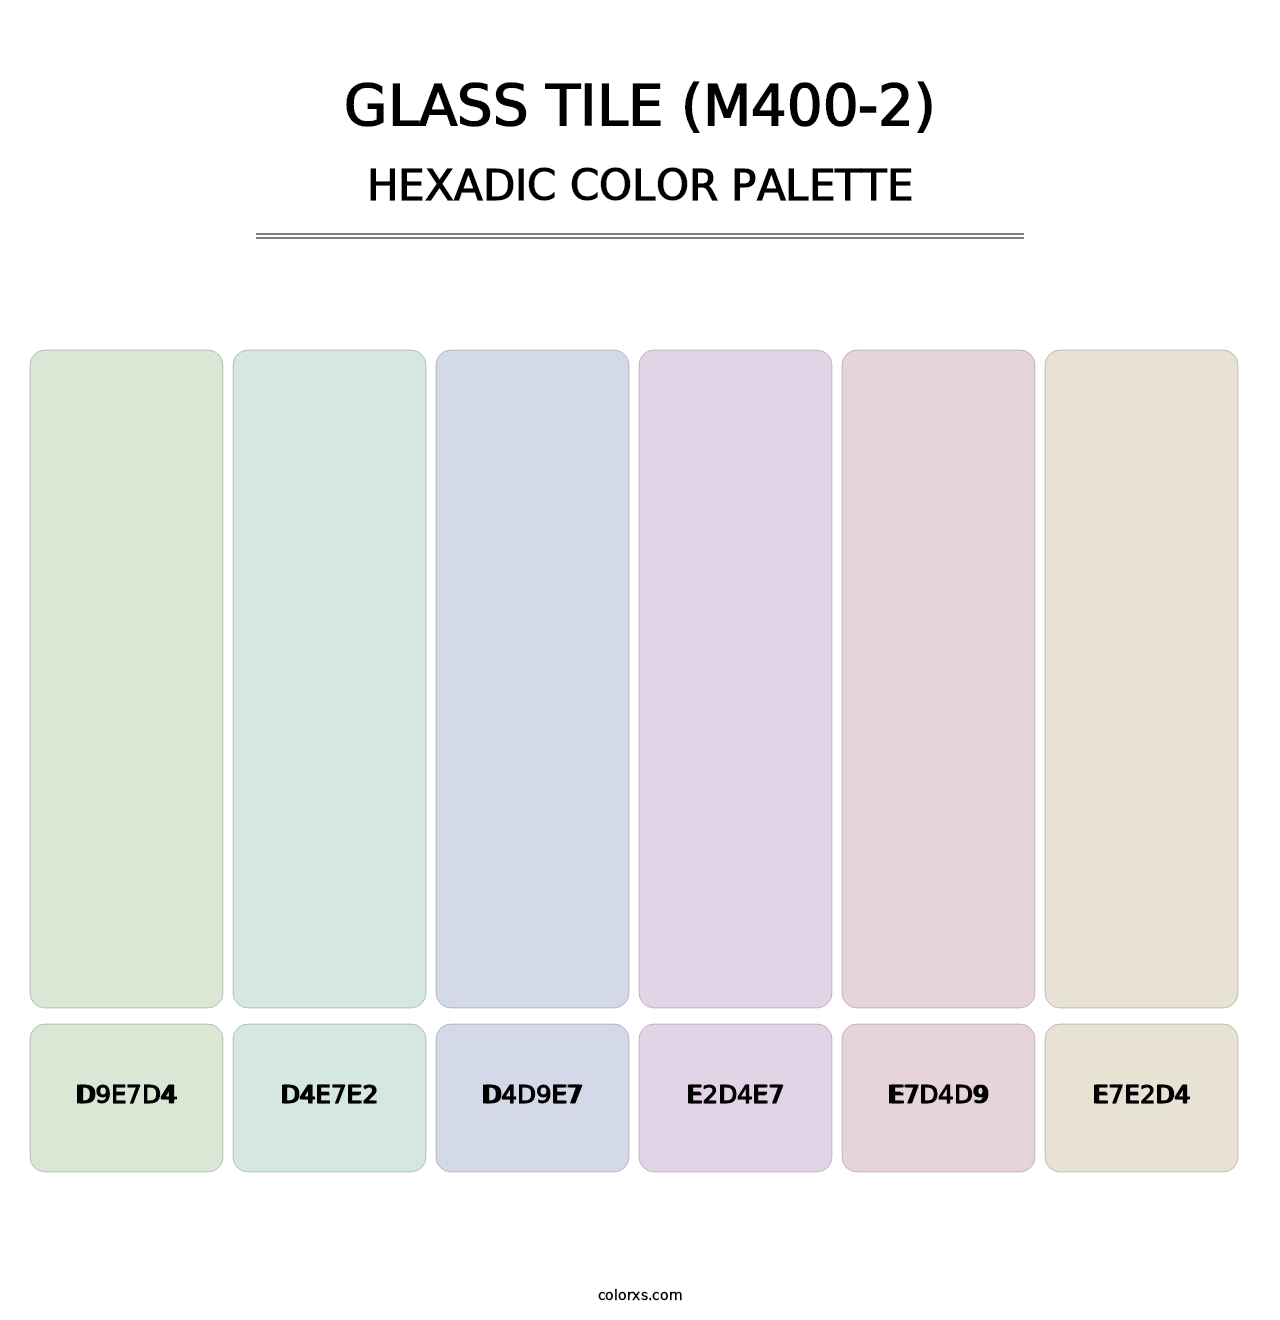 Glass Tile (M400-2) - Hexadic Color Palette